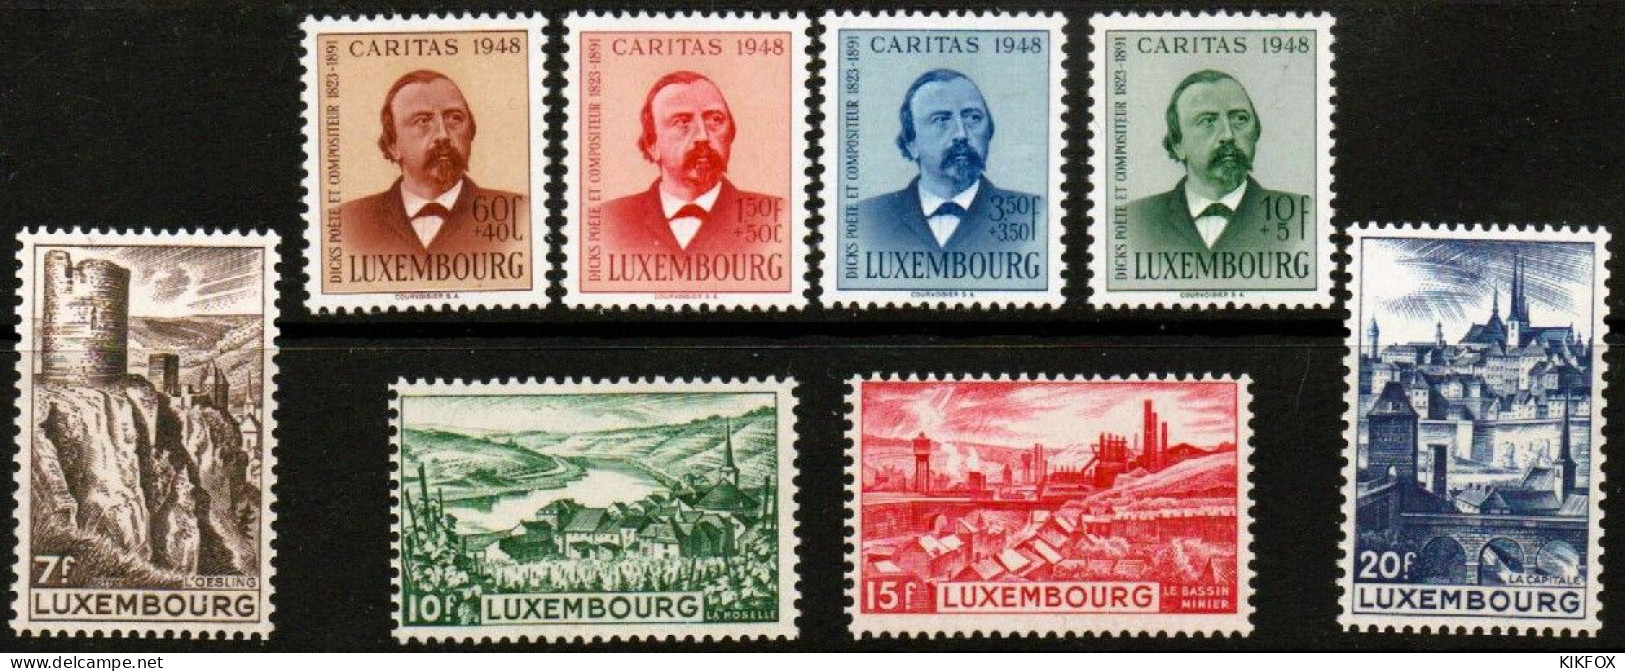 Luxembourg ,Luxemburg 1948,KOMPLETT, YV 406 - 413, Mi 431 - 438, Complete Year , NEUF/CHARNIERES ,POSTFRISCH/UNGEBRAUCHT - Volledige Jaargang